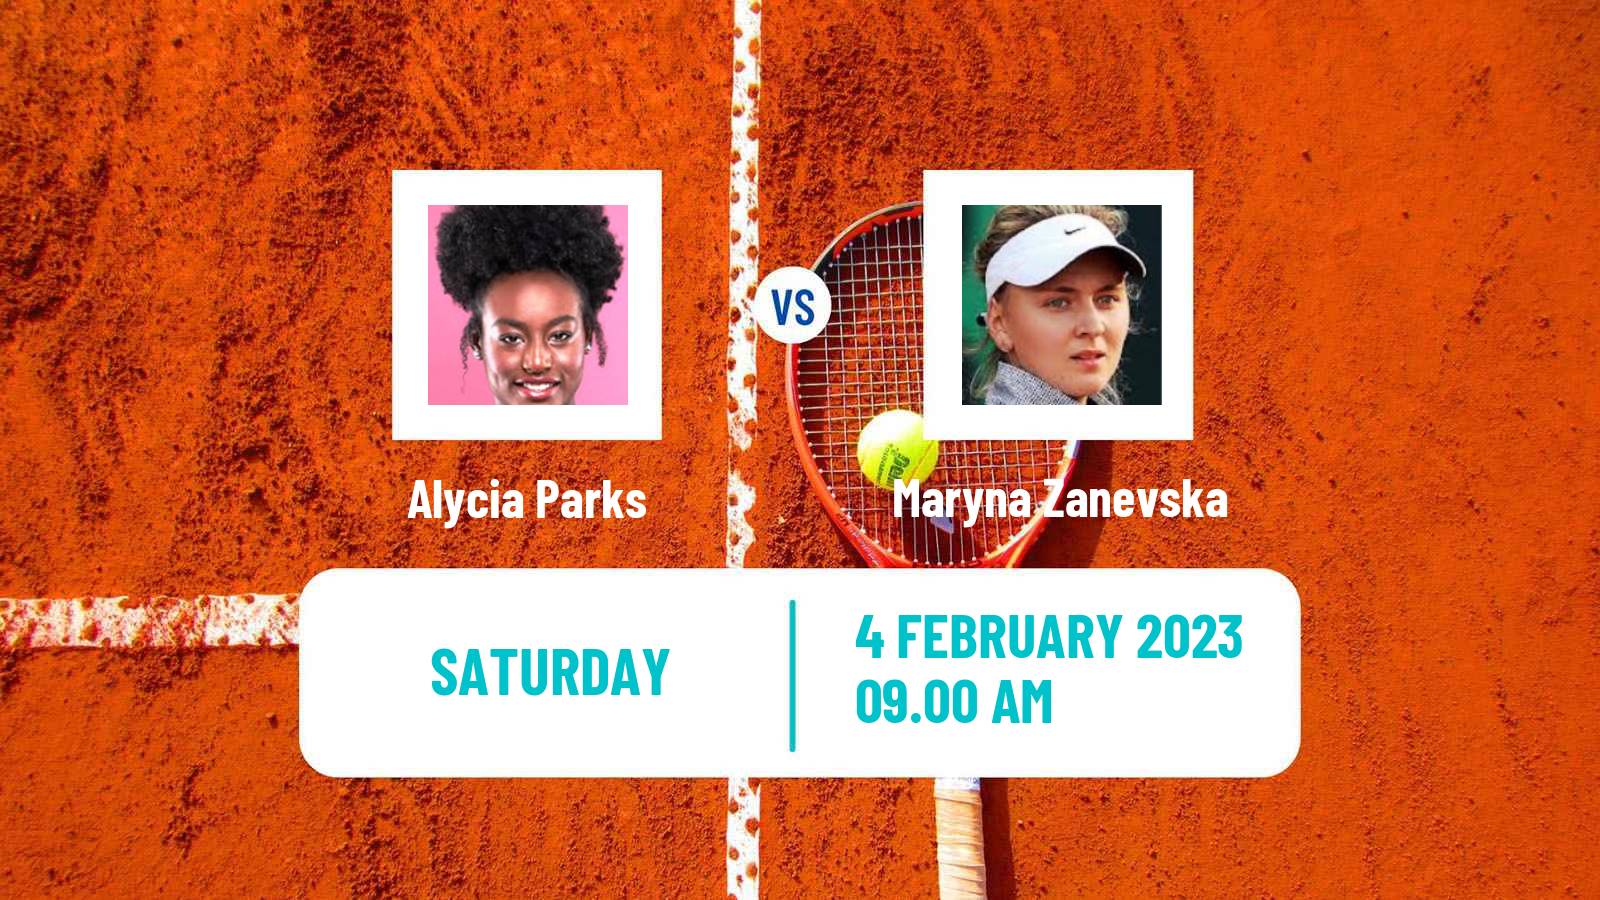 Tennis WTA Lyon Alycia Parks - Maryna Zanevska